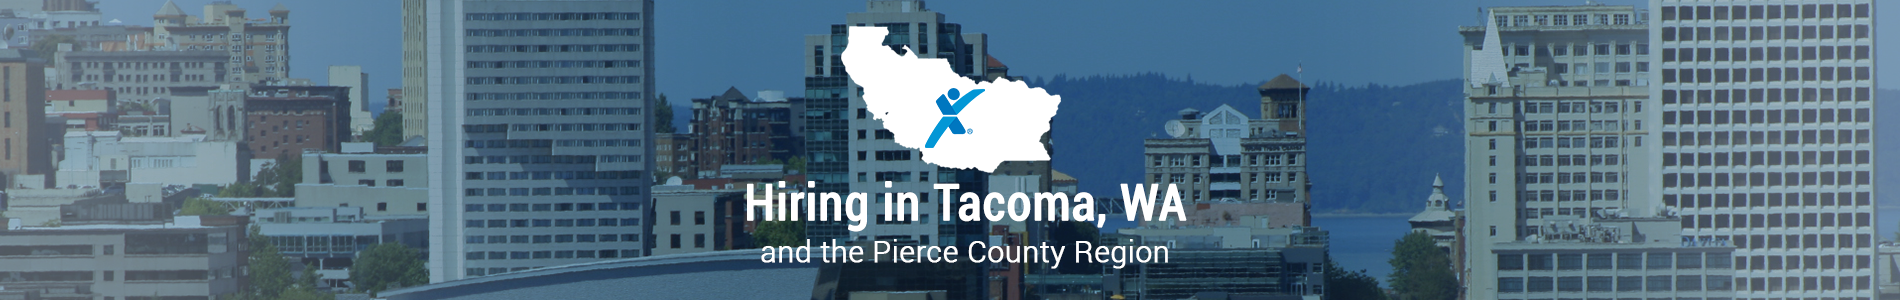 Hiring in Tacoma, WA